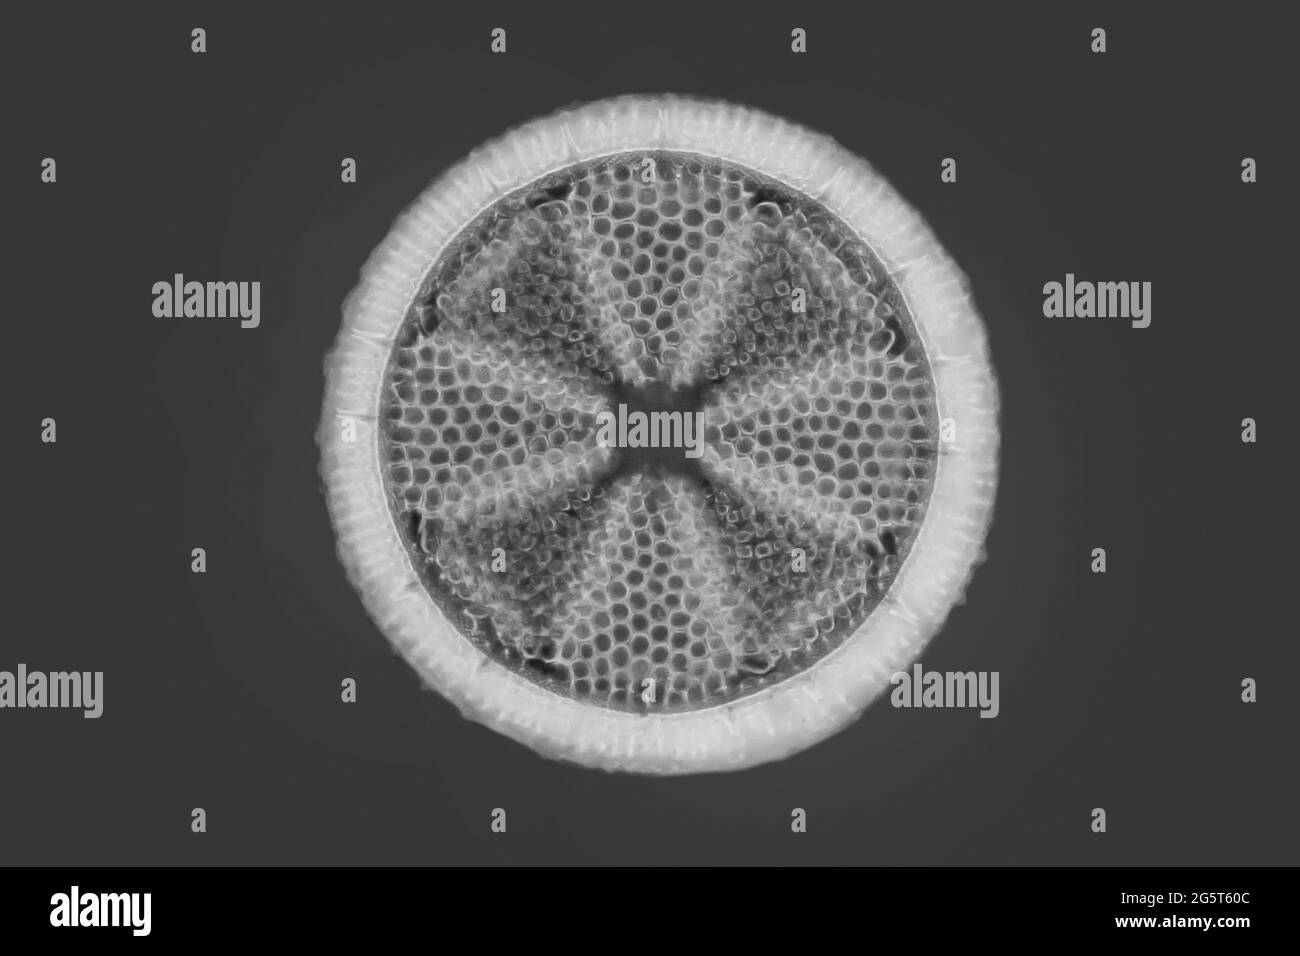 Diatomée (Diatomeae), diatomée de Patuxent River, image IRM à contraste de phase, États-Unis, Maryland Banque D'Images